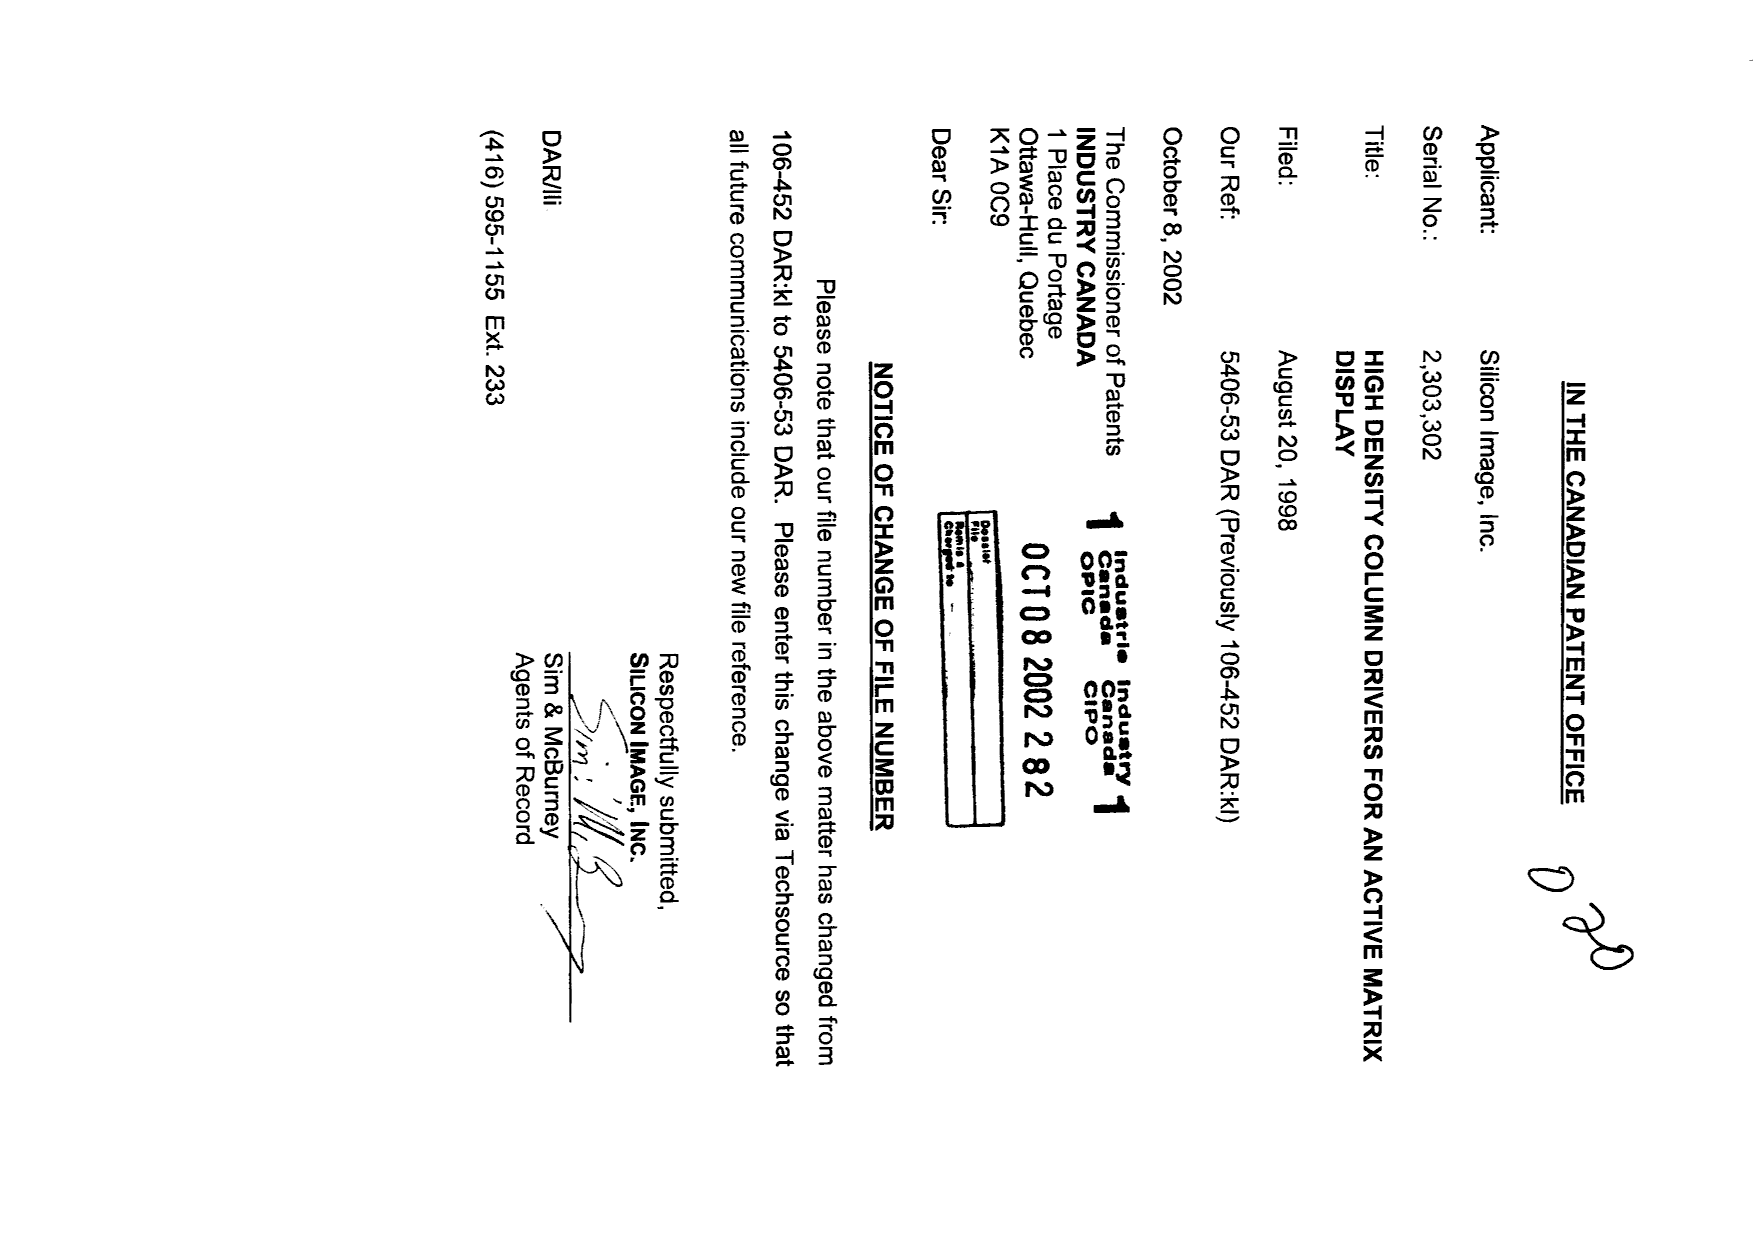 Document de brevet canadien 2303302. Correspondance 20021008. Image 1 de 1